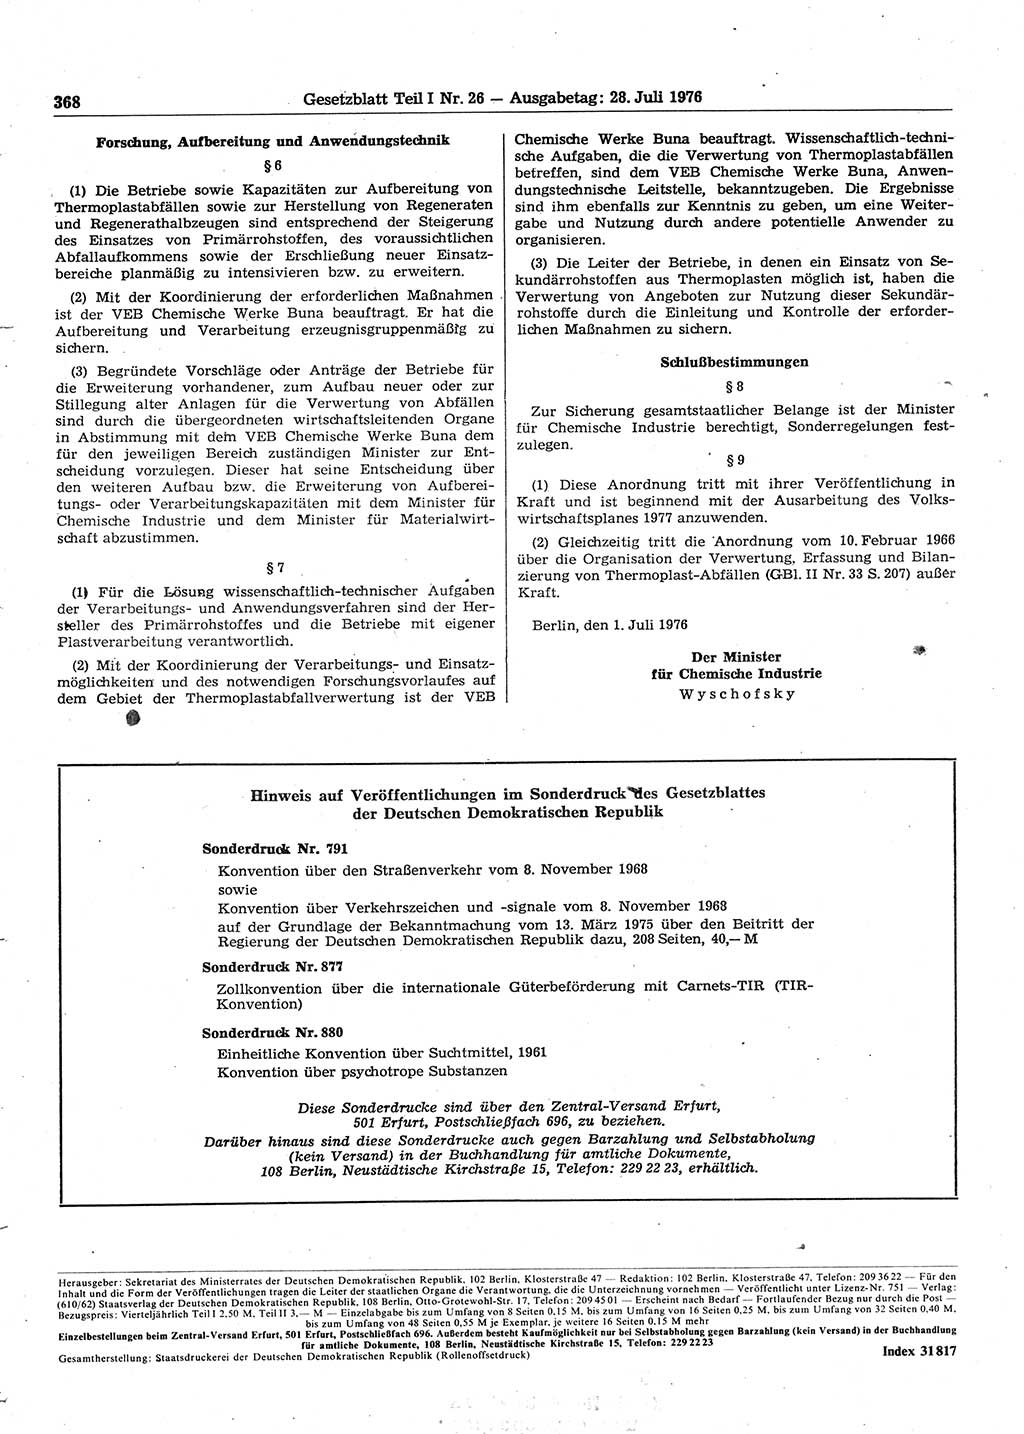 Gesetzblatt (GBl.) der Deutschen Demokratischen Republik (DDR) Teil Ⅰ 1976, Seite 368 (GBl. DDR Ⅰ 1976, S. 368)